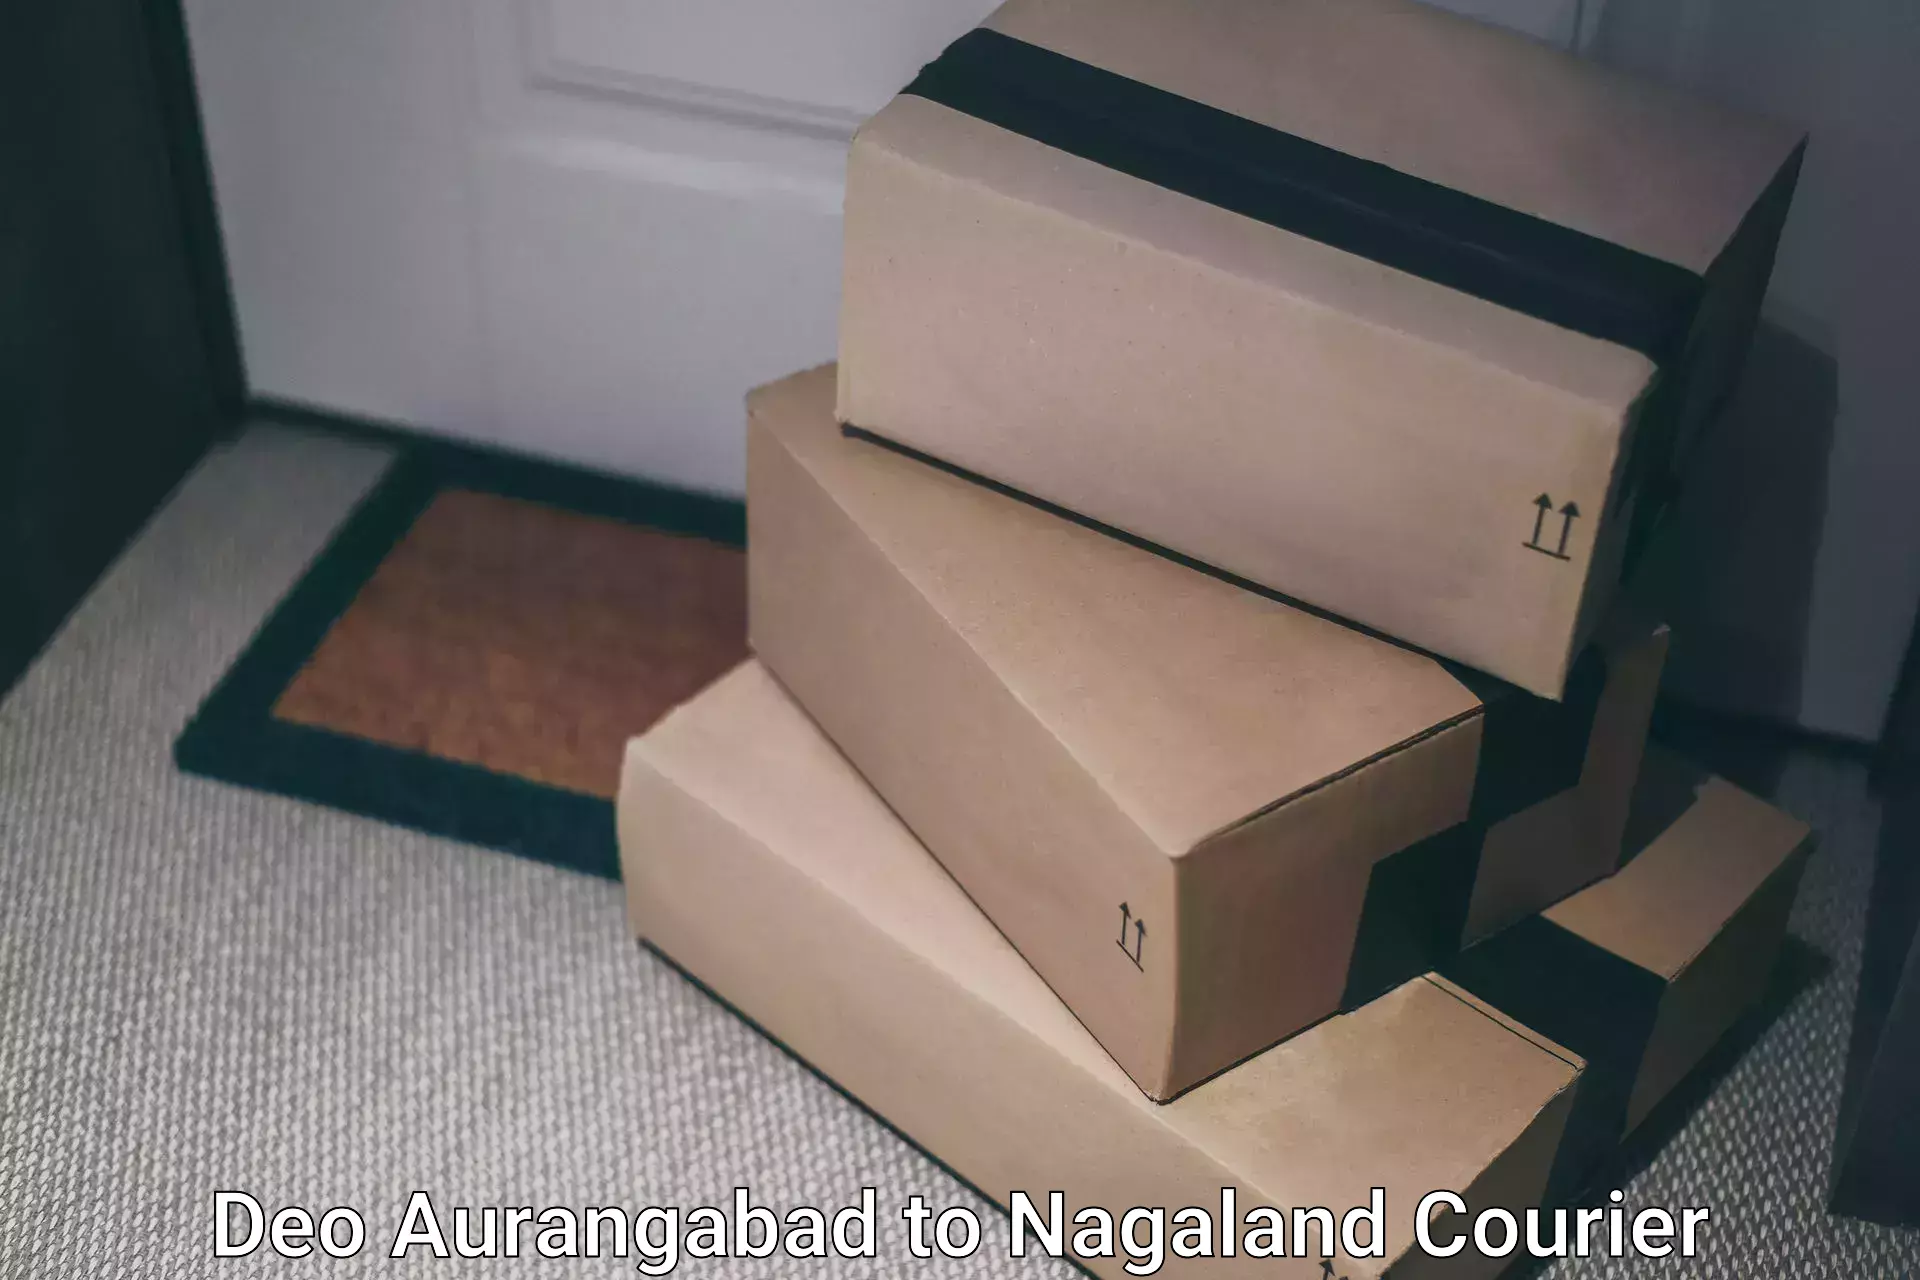 Multi-service courier options Deo Aurangabad to Dimapur